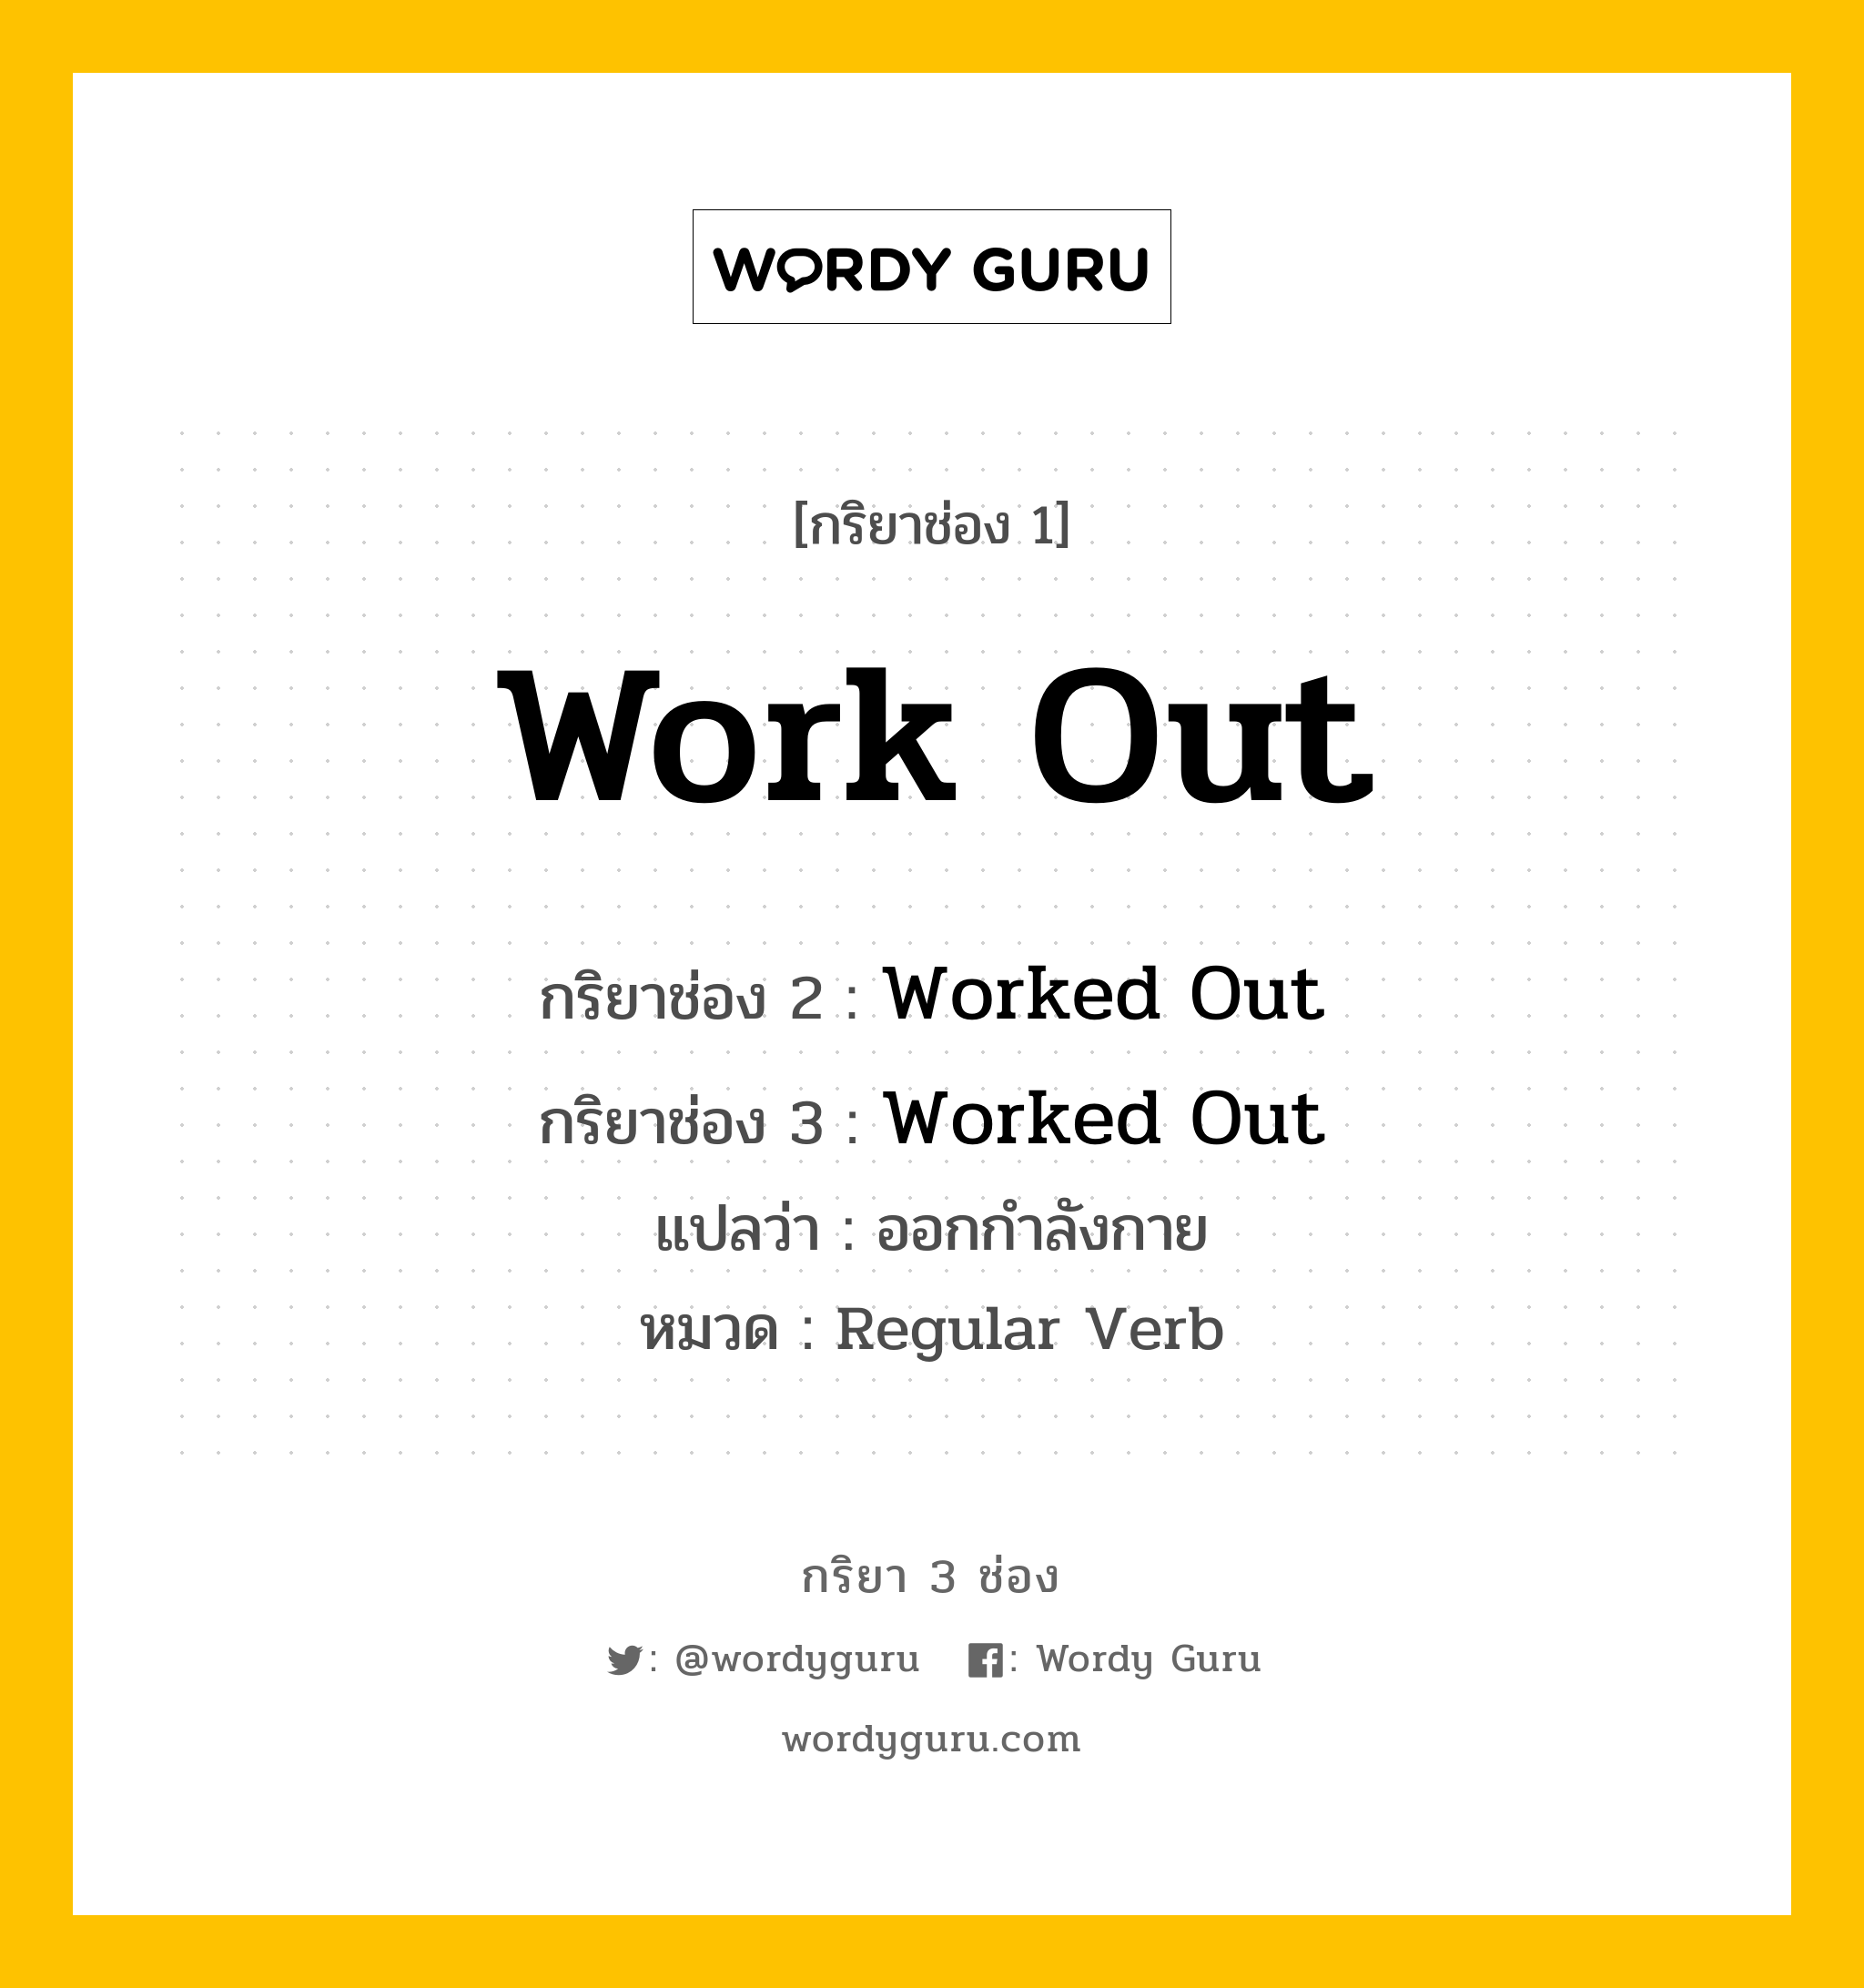 กริยา 3 ช่อง: Work Out ช่อง 2 Work Out ช่อง 3 คืออะไร, กริยาช่อง 1 Work Out กริยาช่อง 2 Worked Out กริยาช่อง 3 Worked Out แปลว่า ออกกำลังกาย หมวด Regular Verb หมวด Regular Verb